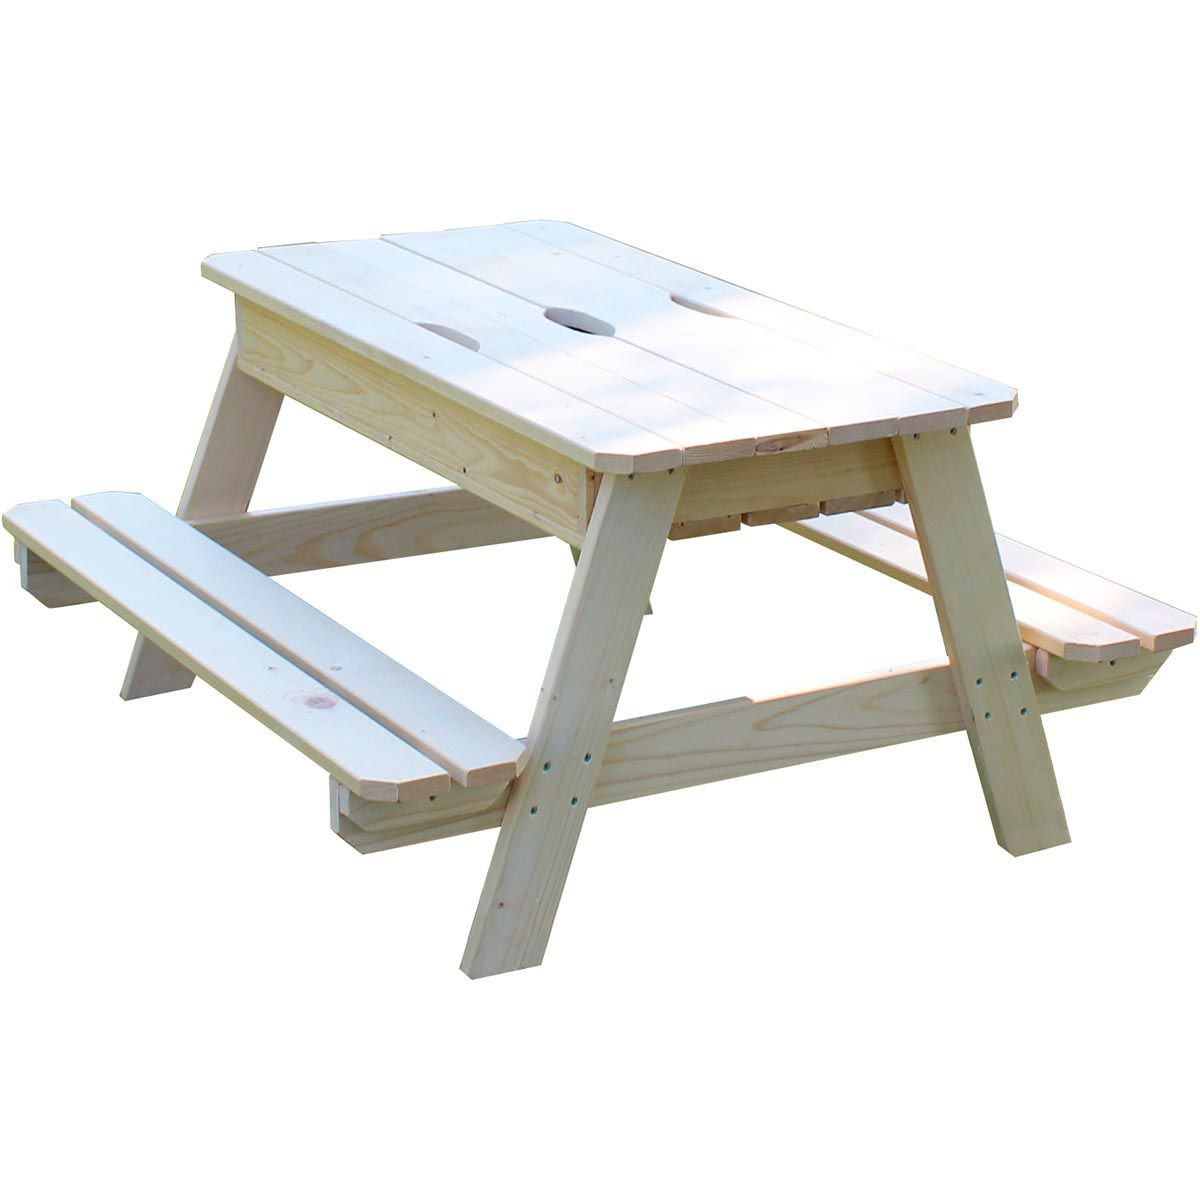 Table en bois avec bac à sable intégré pour enfant 90 x 91,5 x 50 cm